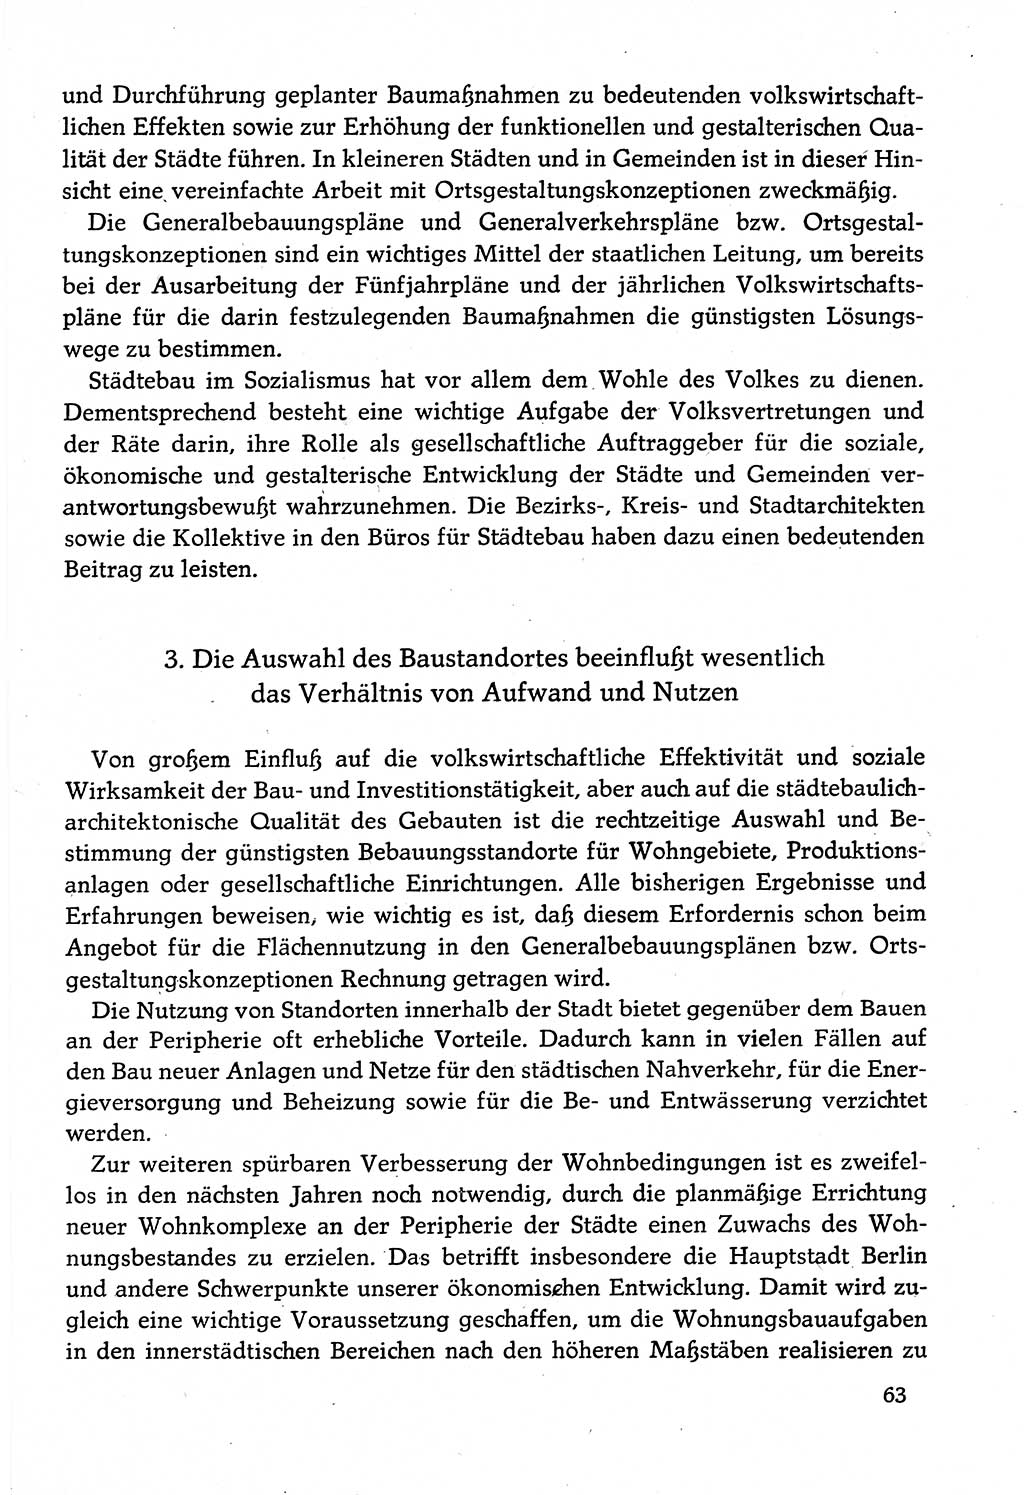 Dokumente der Sozialistischen Einheitspartei Deutschlands (SED) [Deutsche Demokratische Republik (DDR)] 1982-1983, Seite 63 (Dok. SED DDR 1982-1983, S. 63)